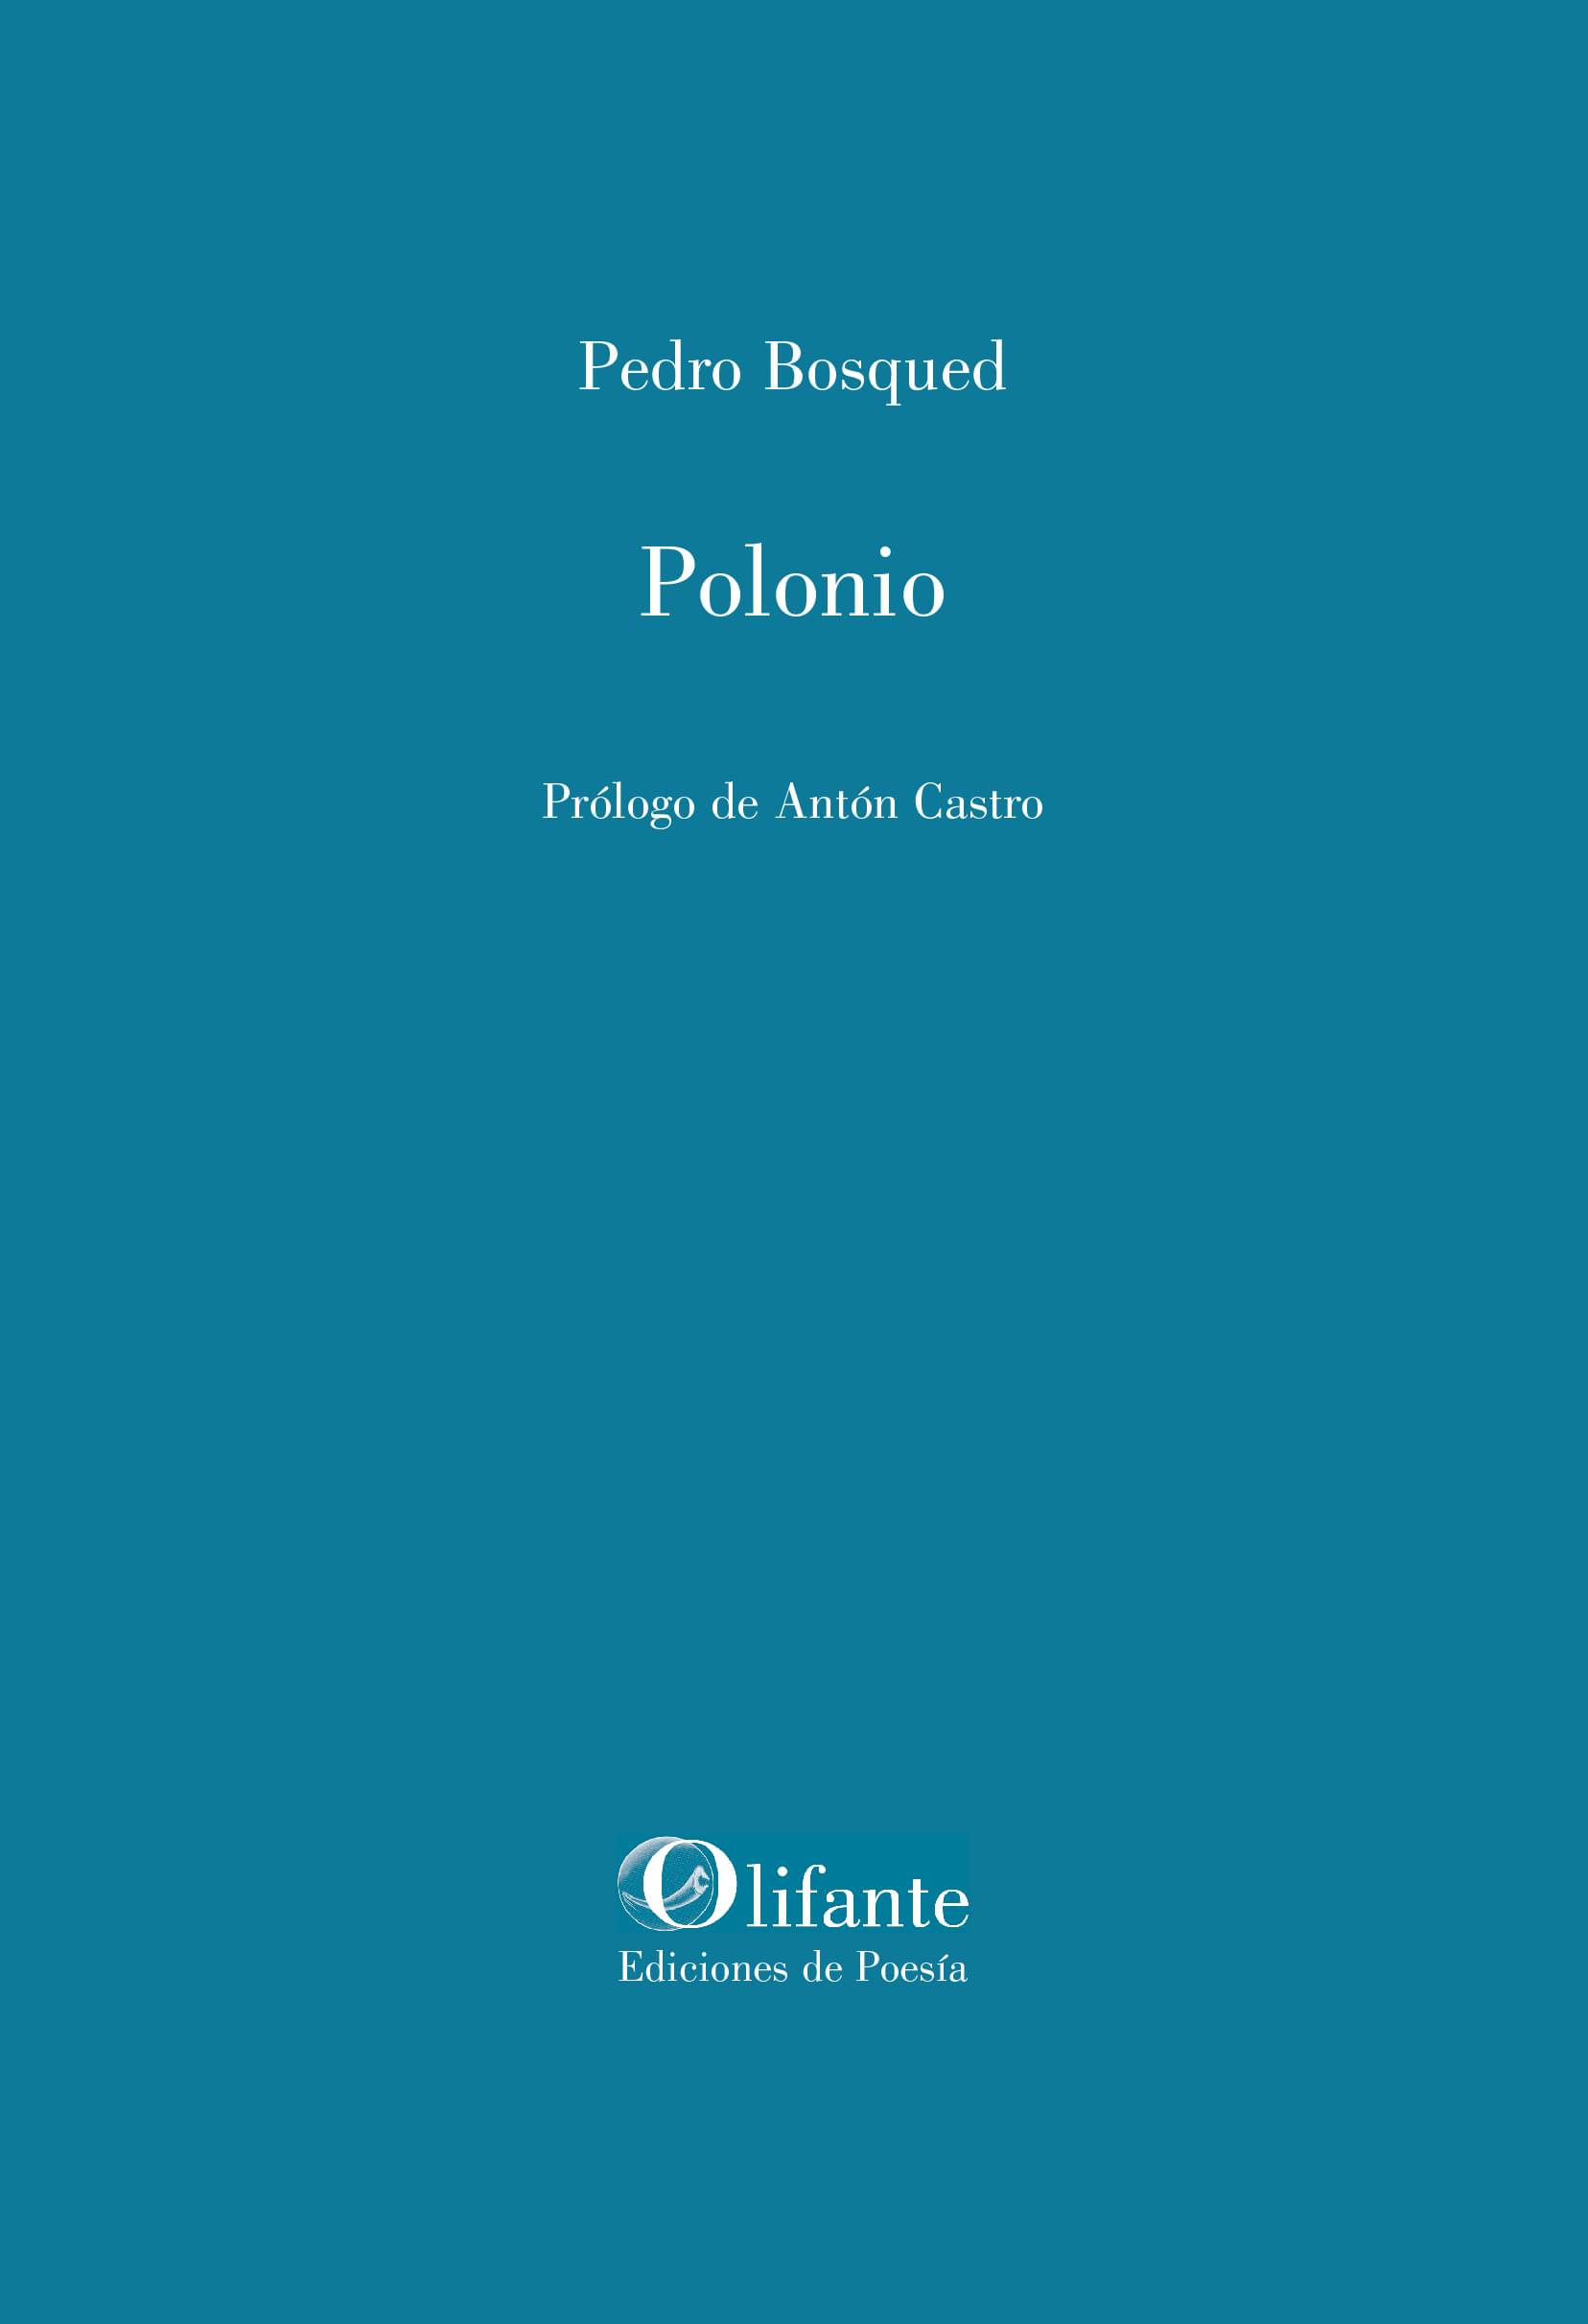 Pedro Bosqued presenta "Polonio"